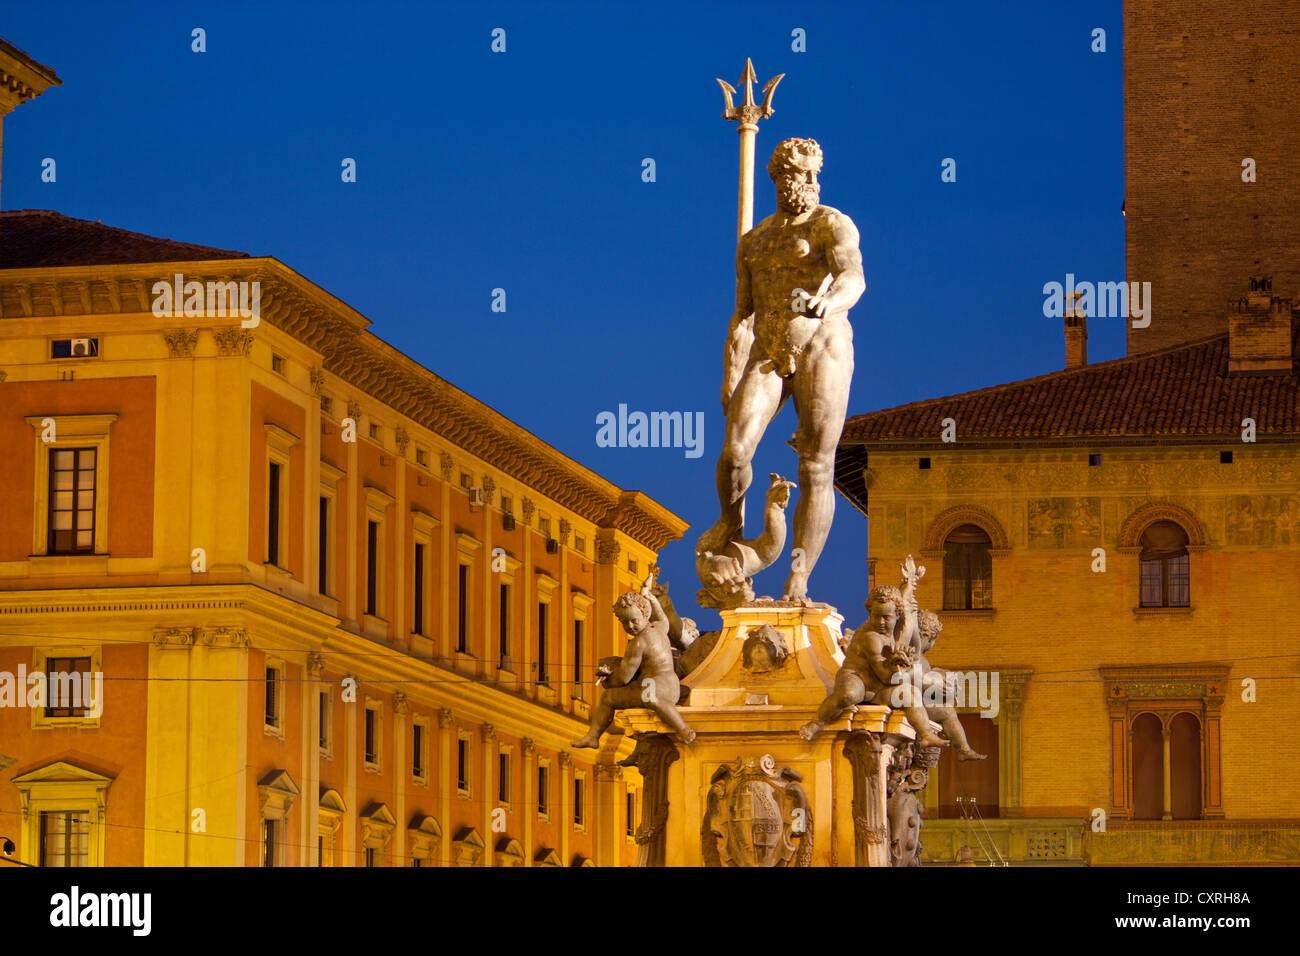 Statue of Neptune at night Piazza Nettuno Bologna Emilia Romagna Italy Stock Photo